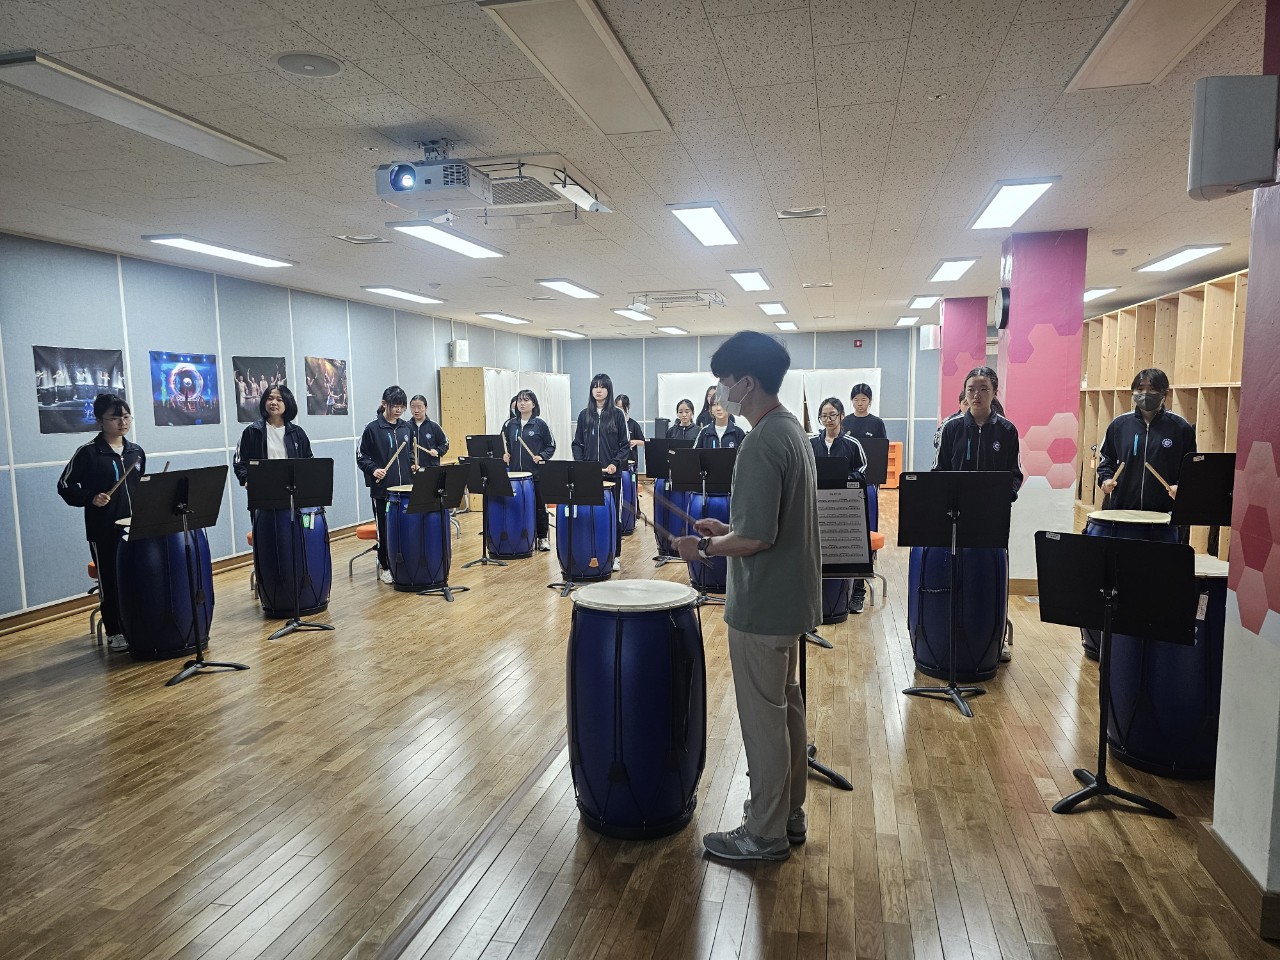 
															
															
																
																	함안여자중학교, 예술교육원 해봄에서 함께한 자유학기제 체험 활동 [3번째 이미지]
																
																
															
														